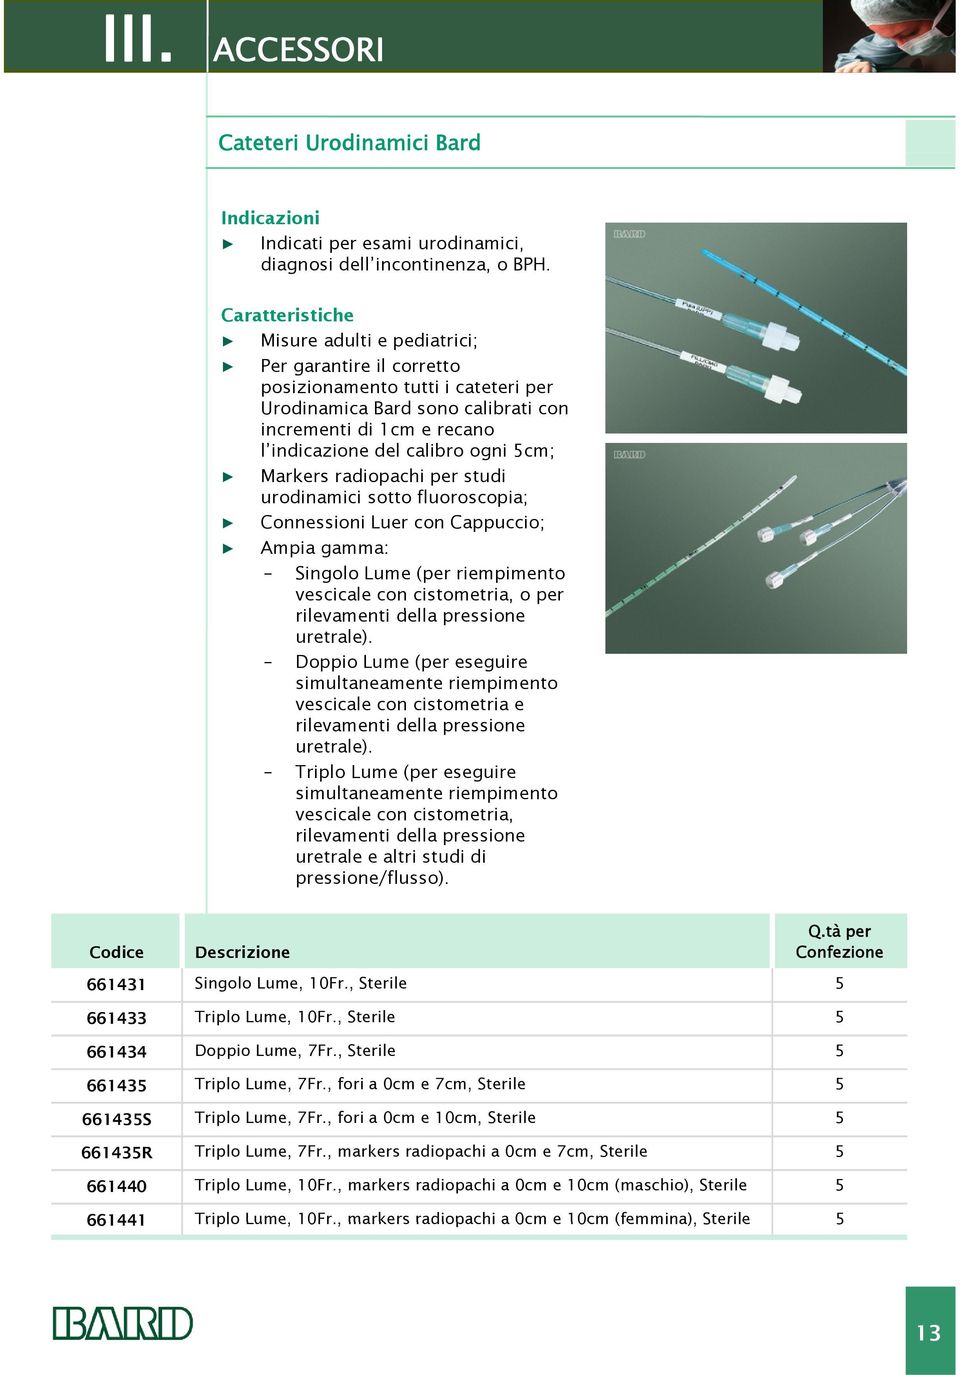 5cm; Markers radiopachi per studi urodinamici sotto fluoroscopia; Connessioni Luer con Cappuccio; Ampia gamma: Singolo Lume (per riempimento vescicale con cistometria, o per rilevamenti della